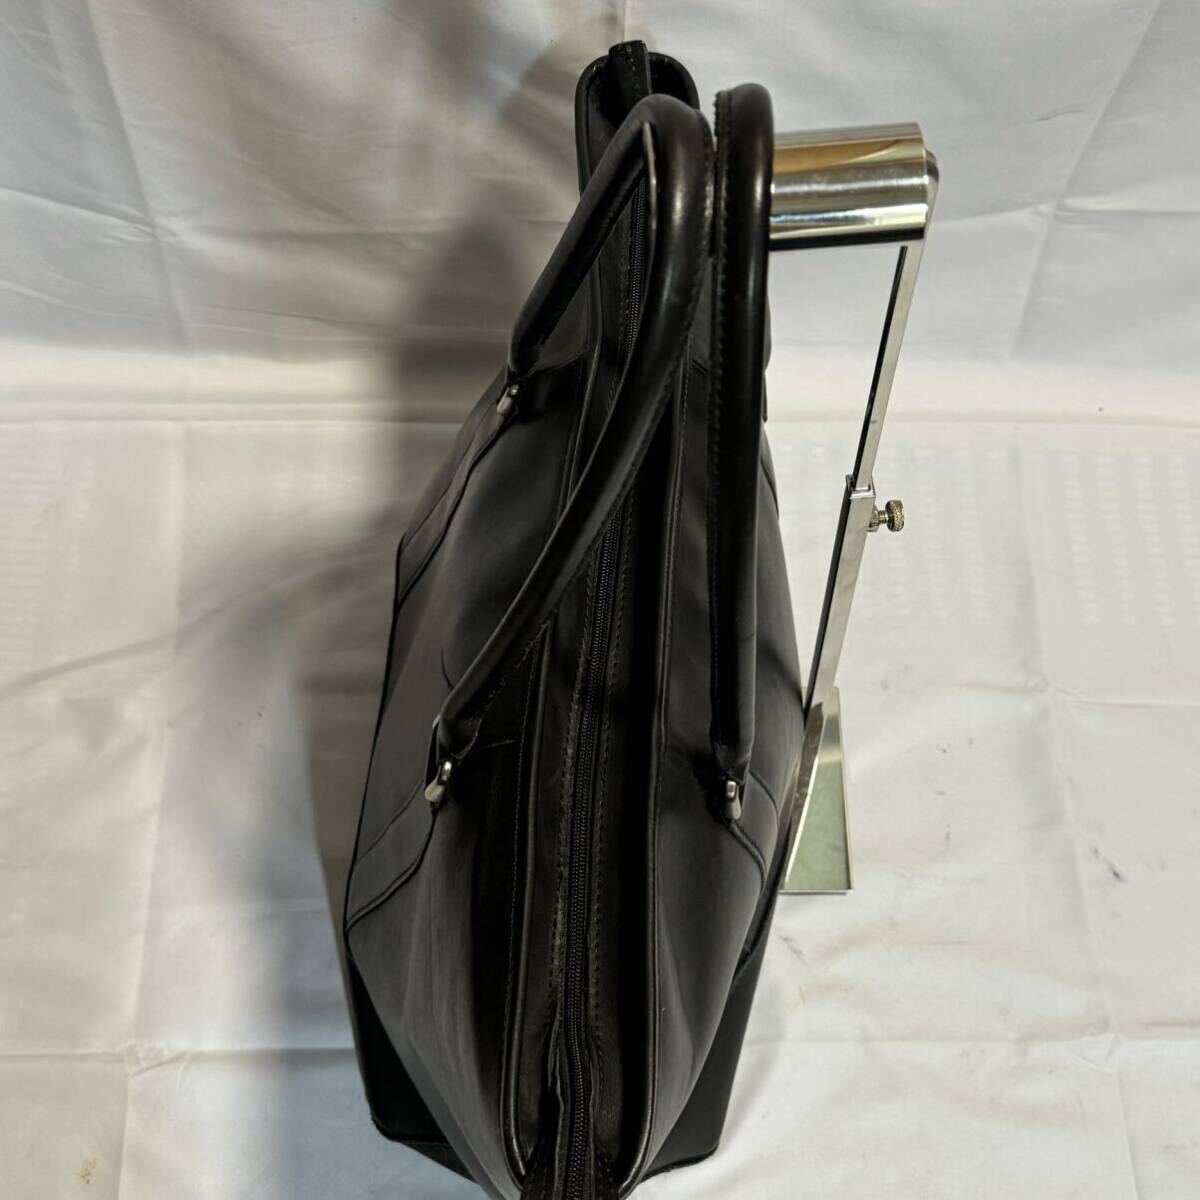  превосходный товар A4 L.L.BEAN L e рубин n большая сумка кожа натуральная кожа черный чёрный портфель портфель плечо .. мужской большая вместимость 